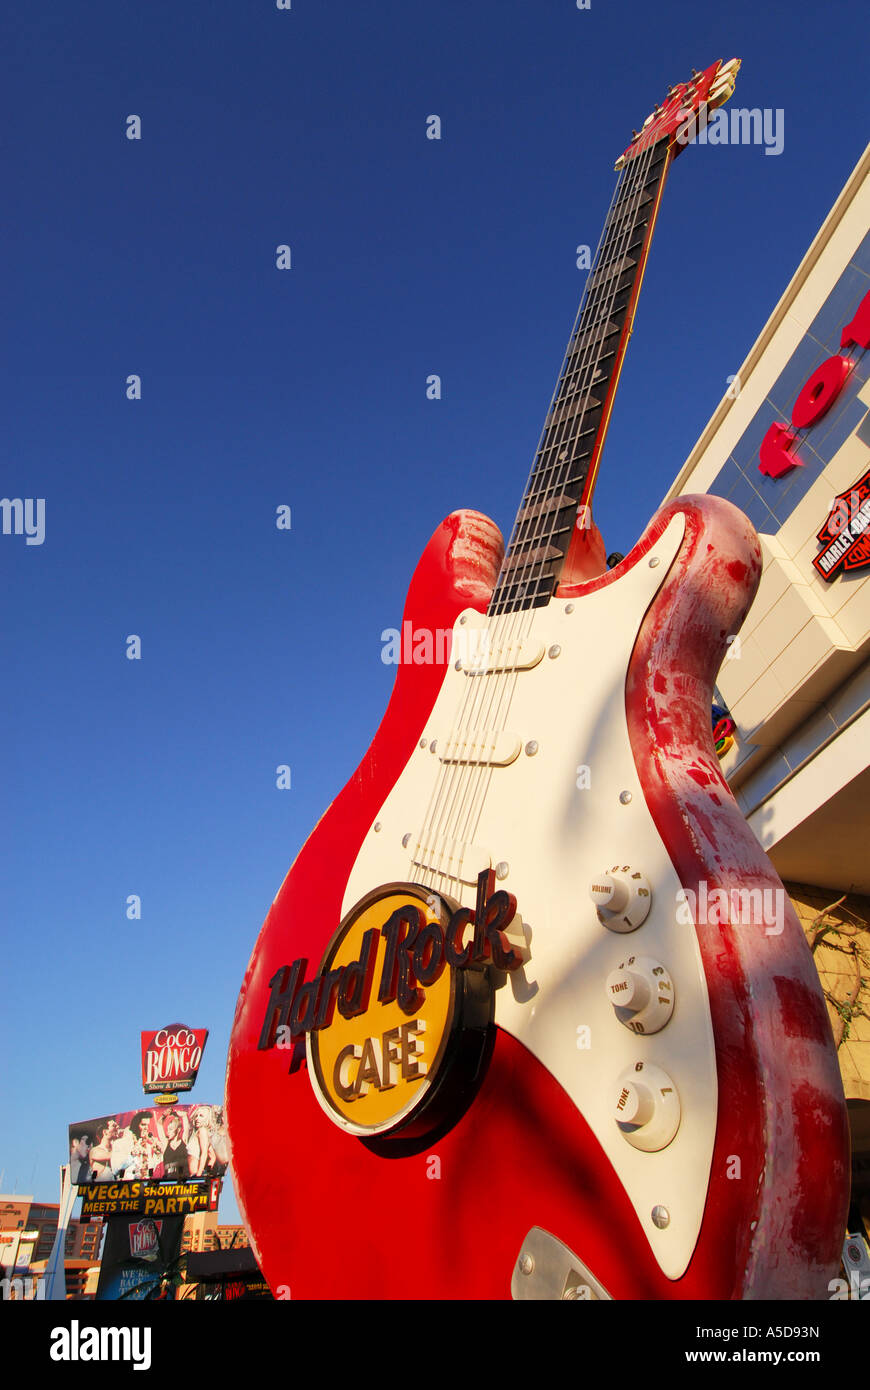 Hard Rock Cafe Cancun penisola dello Yucatan in Messico Foto Stock